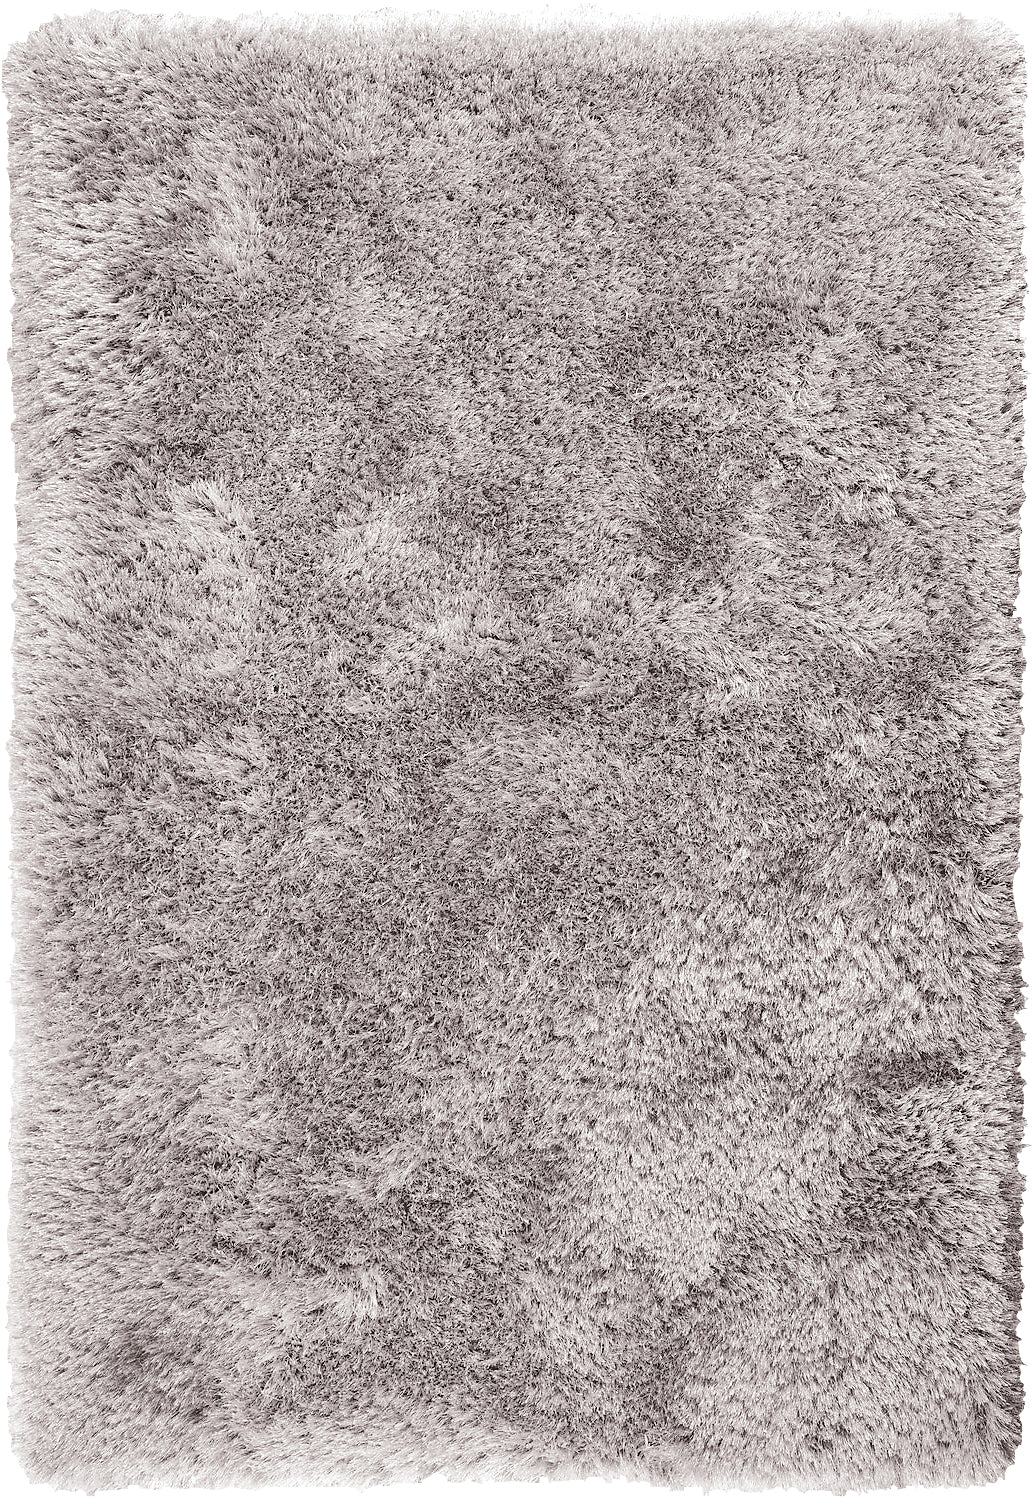 Sparkle Grey Shag Area Rug – 5' x 8' The Brick